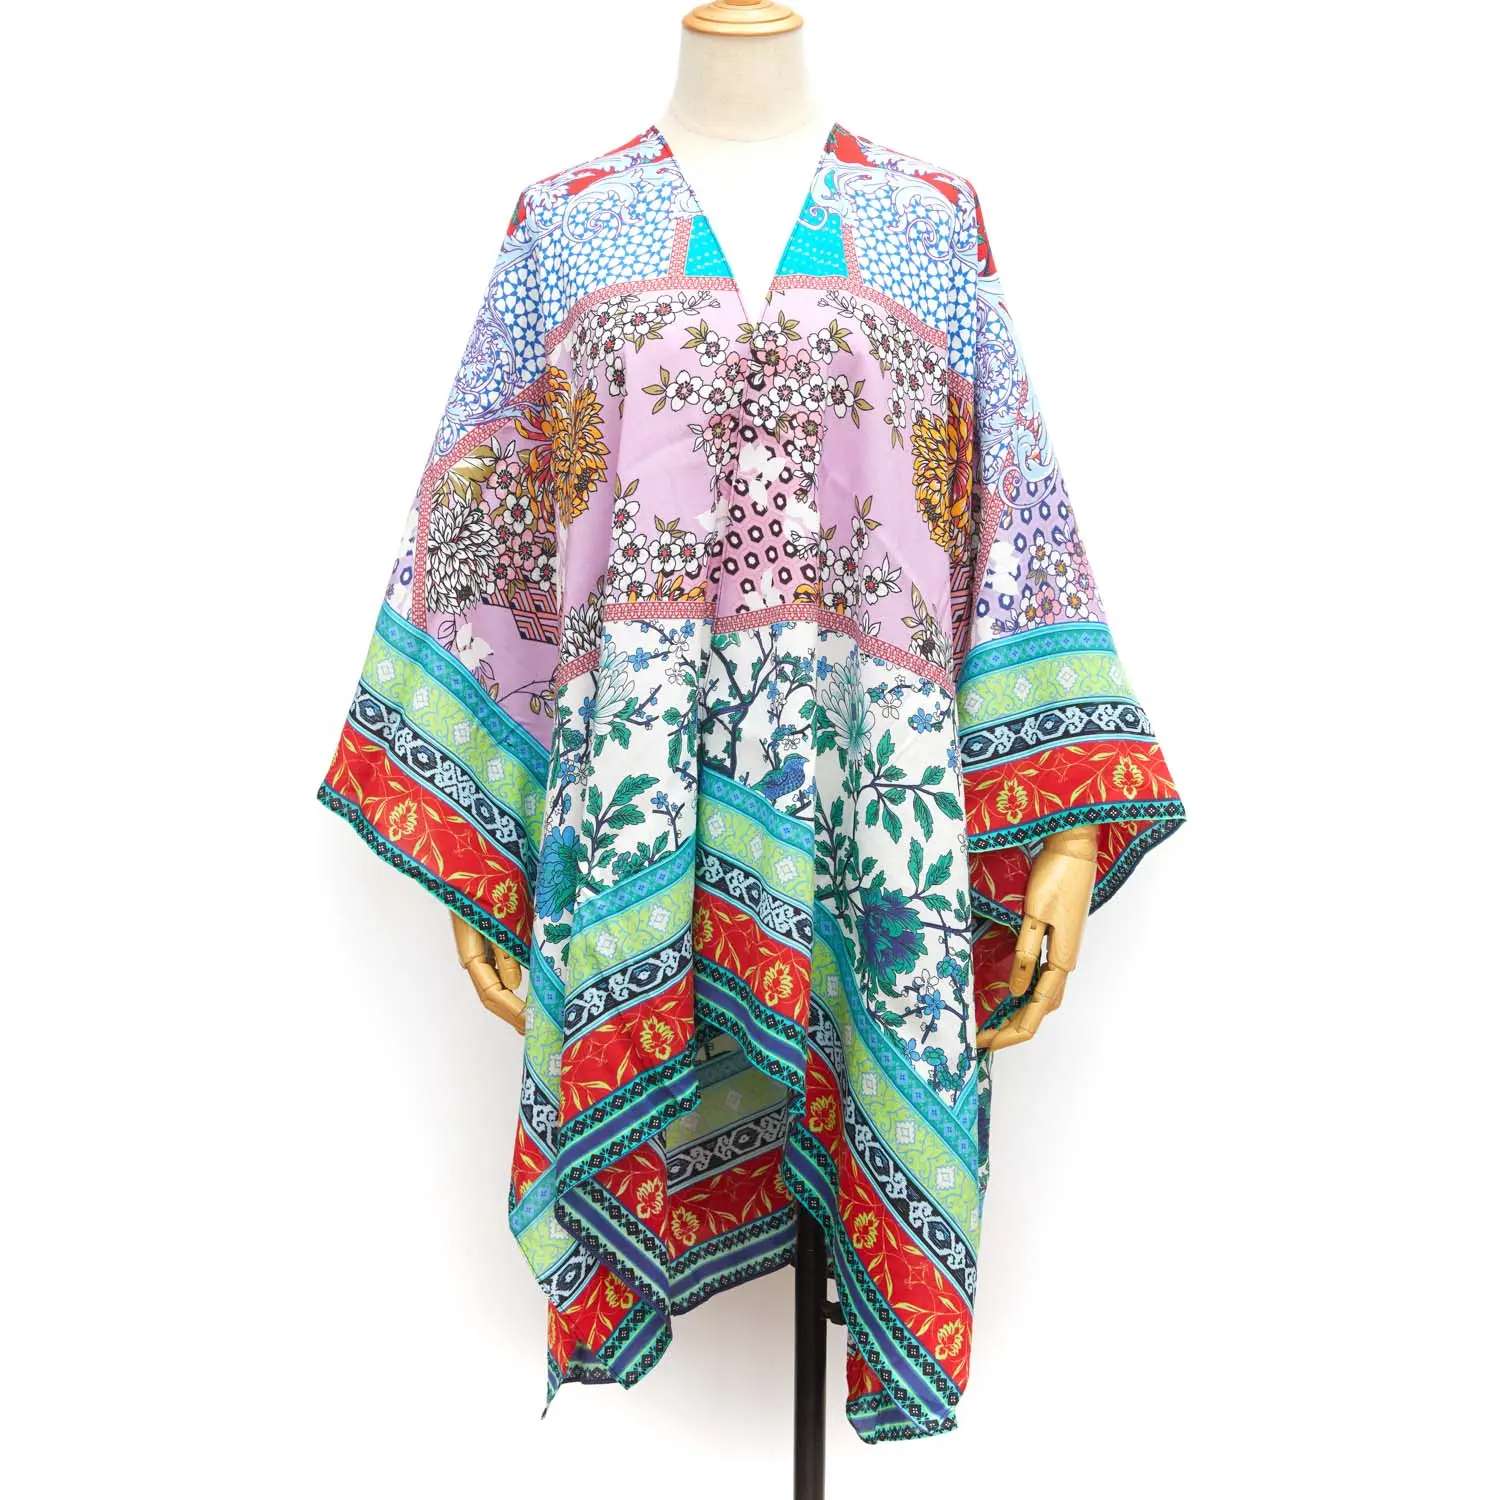 Özel çiçek tasarım made kimono hırka ceket